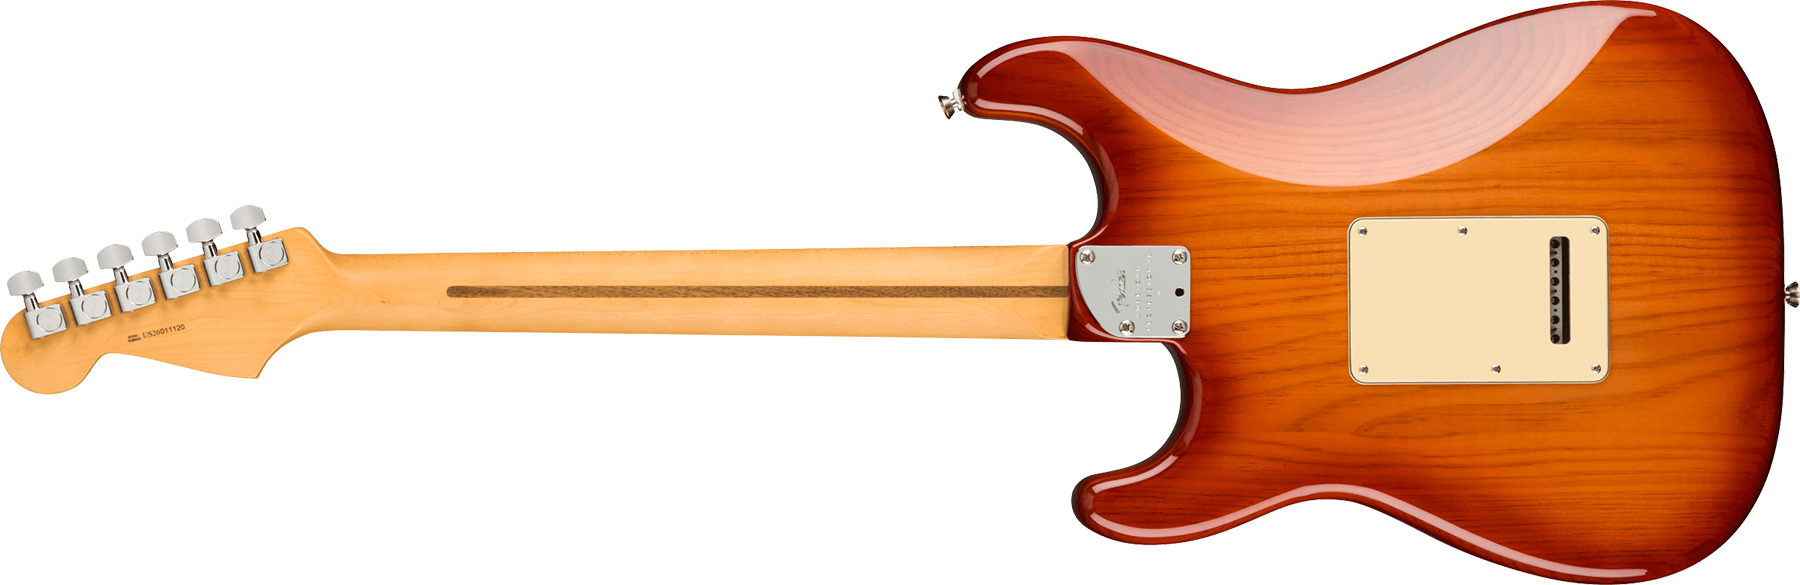 Fender Strat American Professional Ii Hss Usa Mn - Sienna Sunburst - Elektrische gitaar in Str-vorm - Variation 1